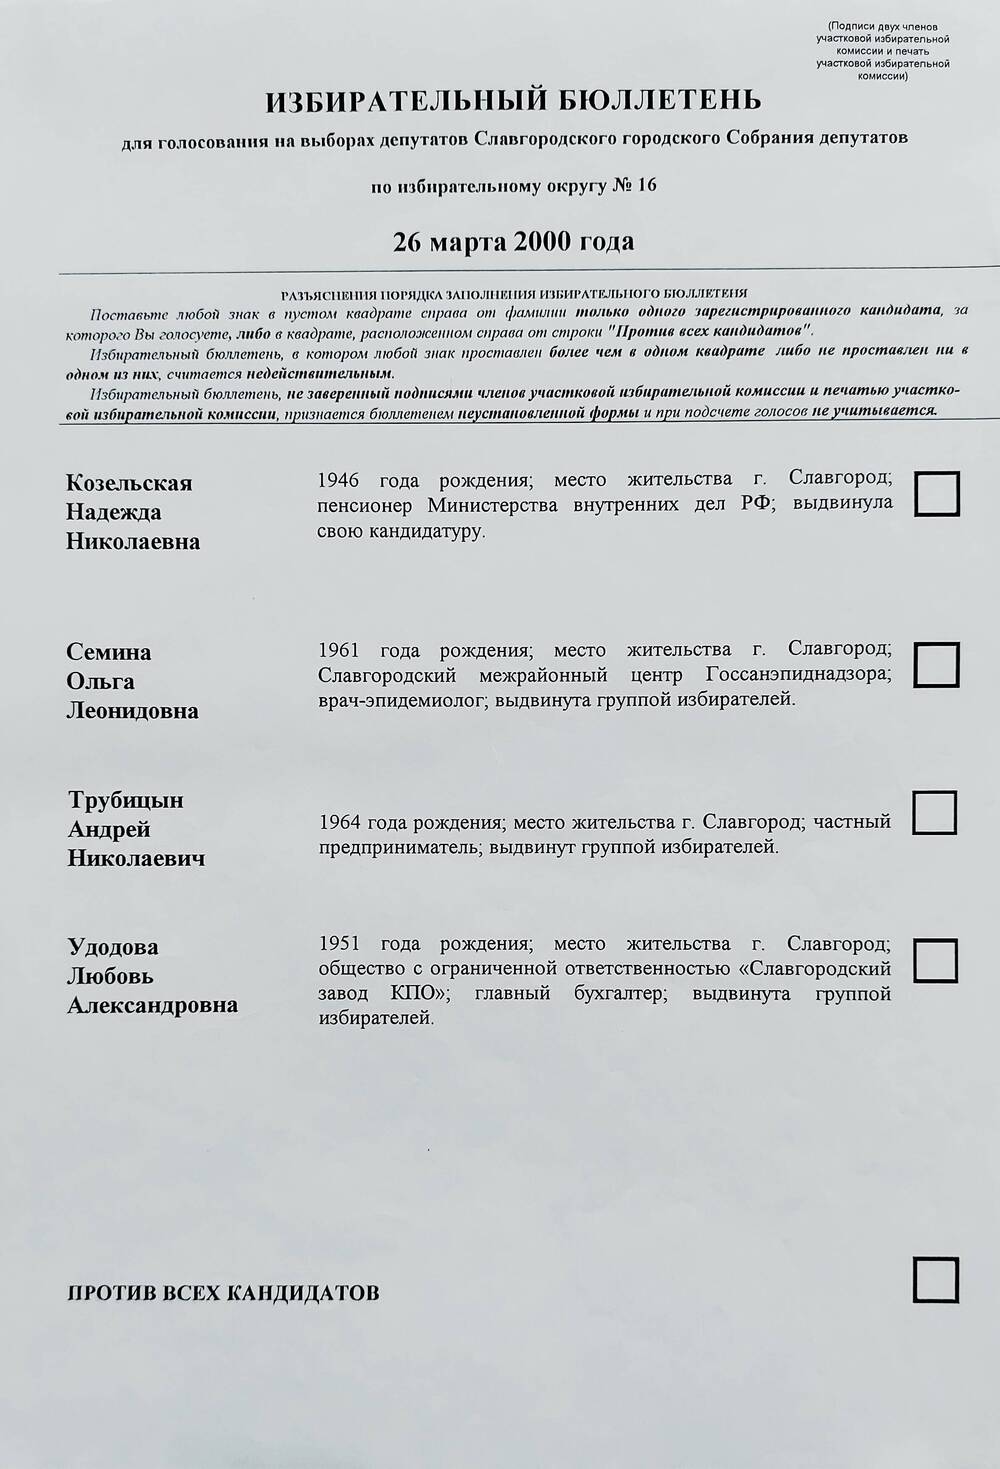 Бюллетень избирательный для голосования на выборах депутатов Славгородского городского Собрания депутатов по избирательному округу № 16 от 26 марта 2000 года.